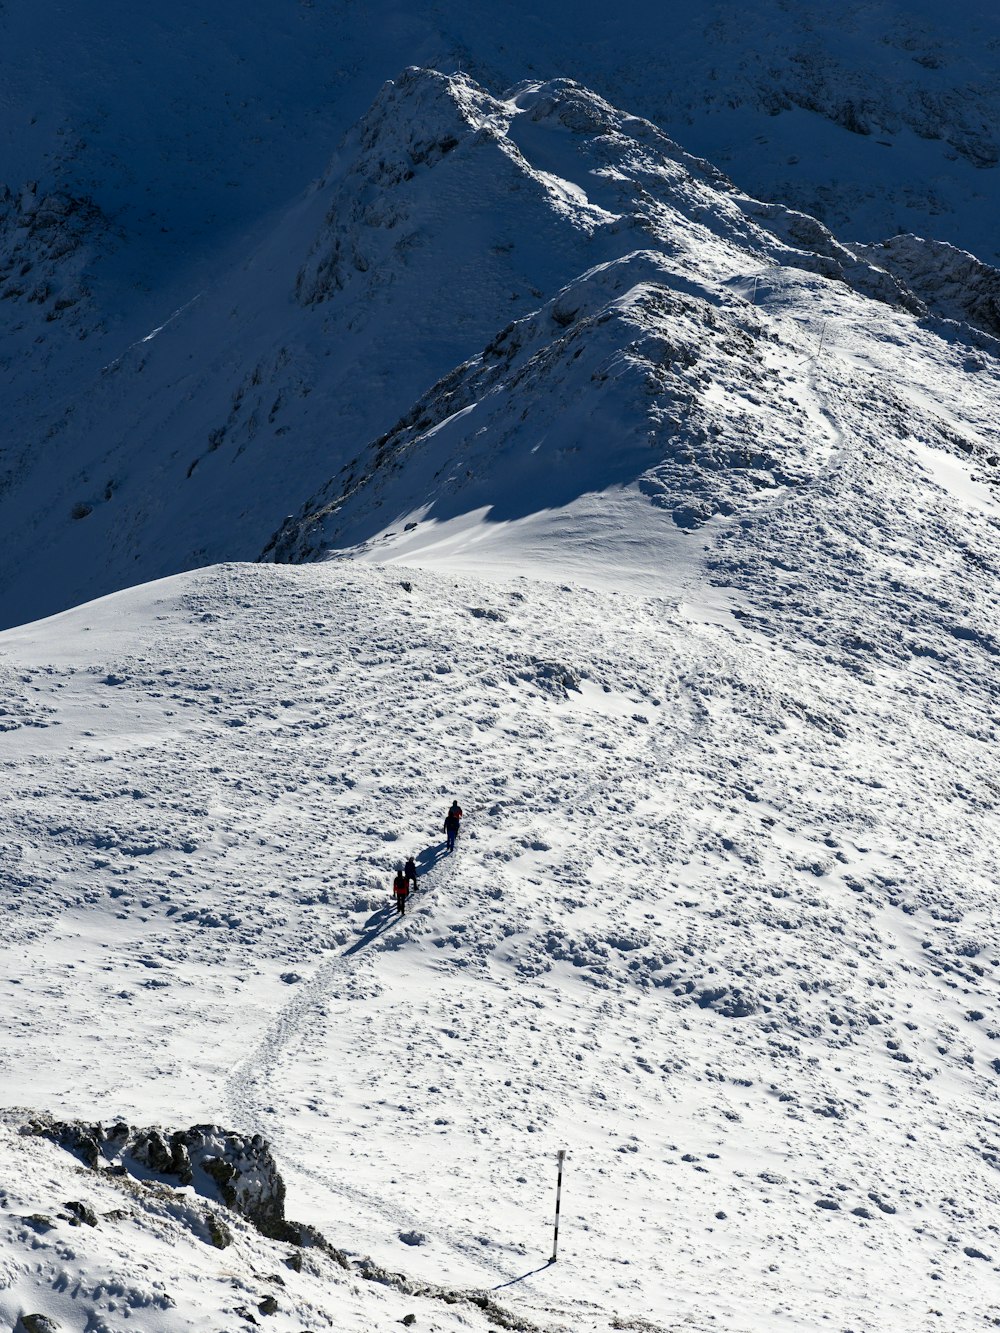 Eine Gruppe von Menschen, die die Seite eines schneebedeckten Berges hinaufgehen